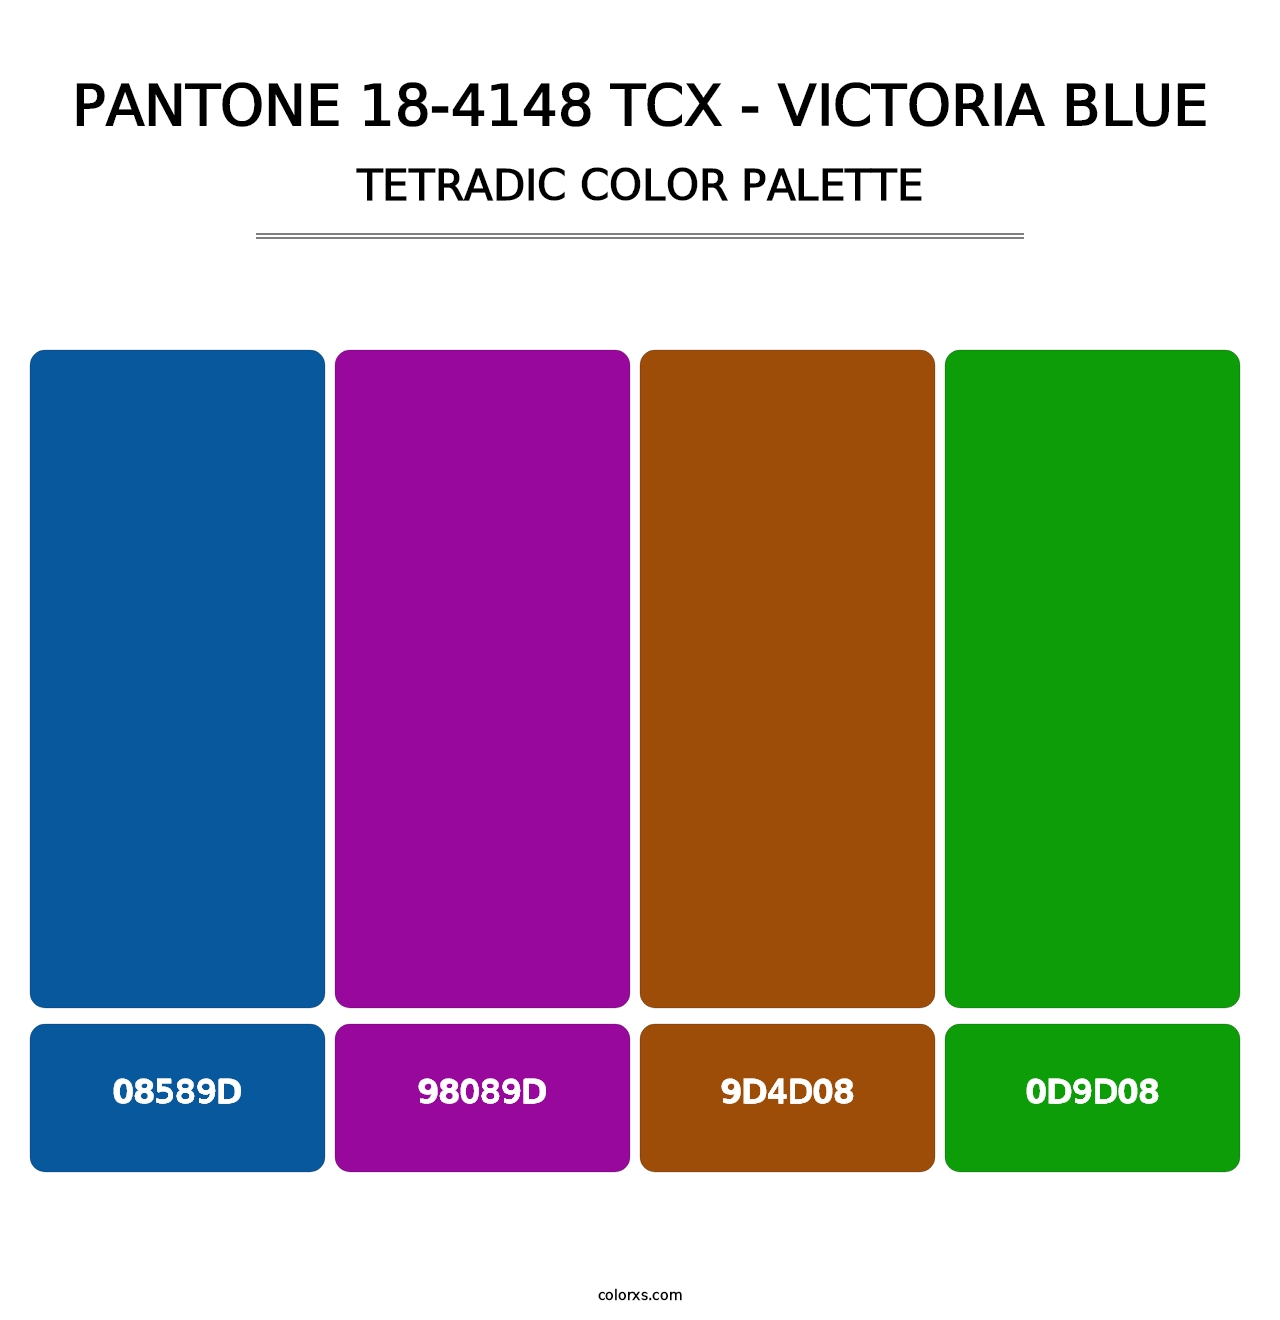 PANTONE 18-4148 TCX - Victoria Blue - Tetradic Color Palette